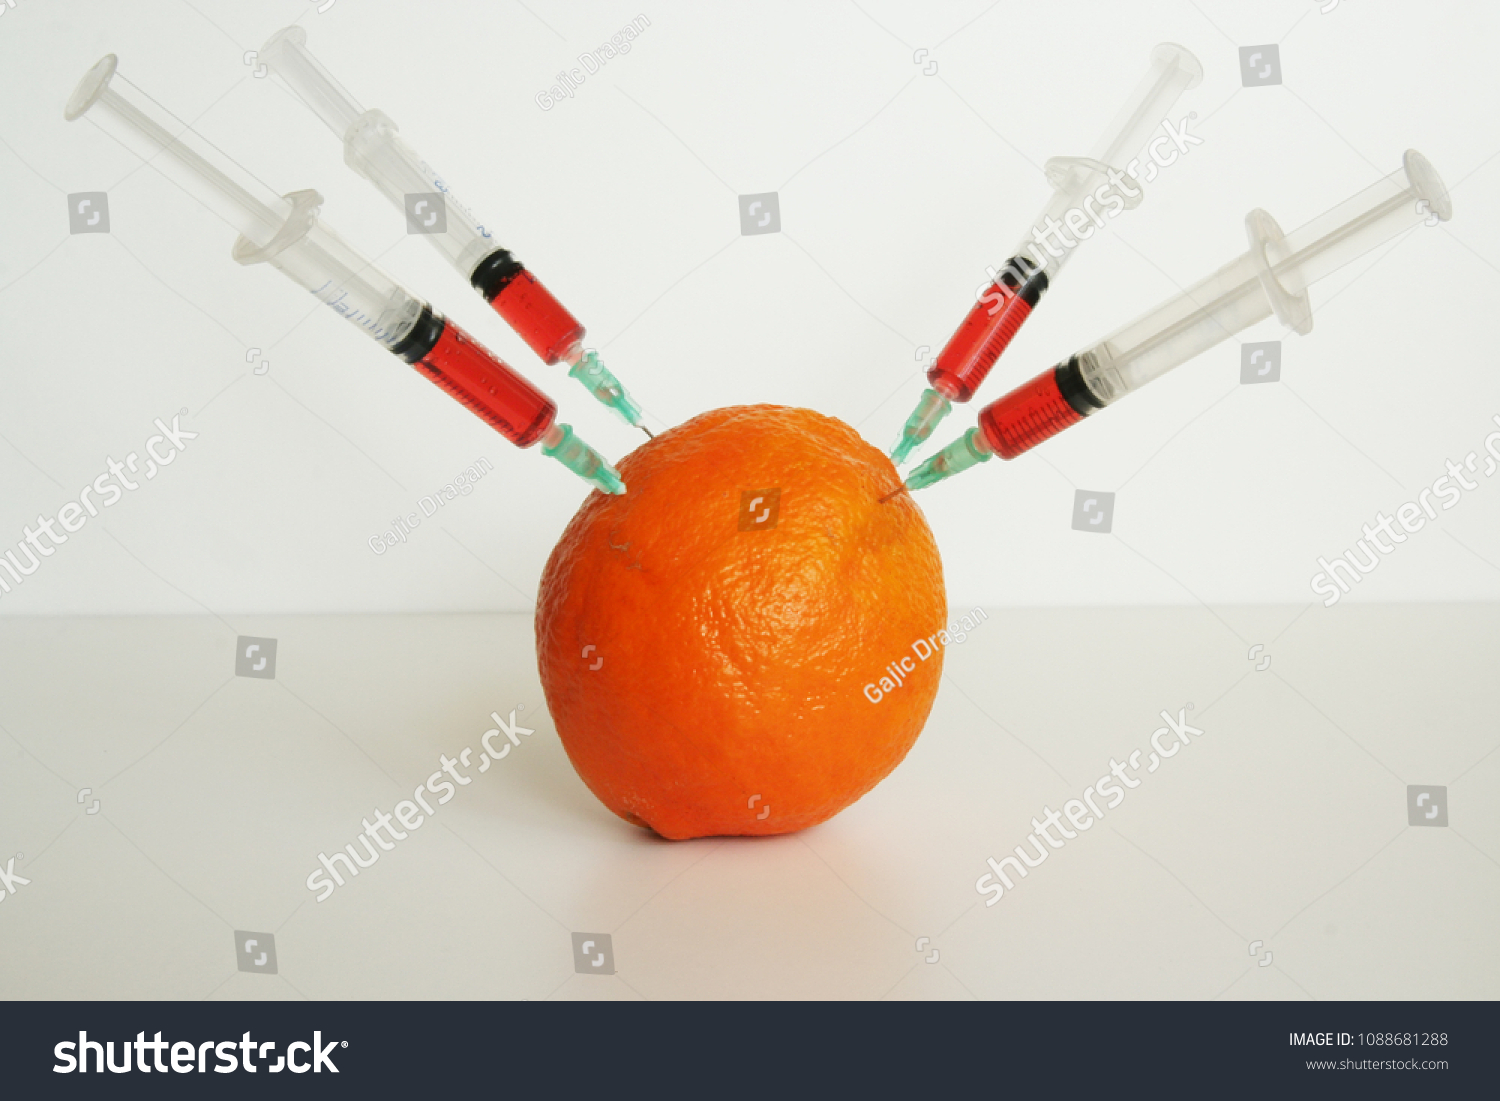 Orange fruit with syringes on it. GMO fruit. GMO food ingredient. #1088681288